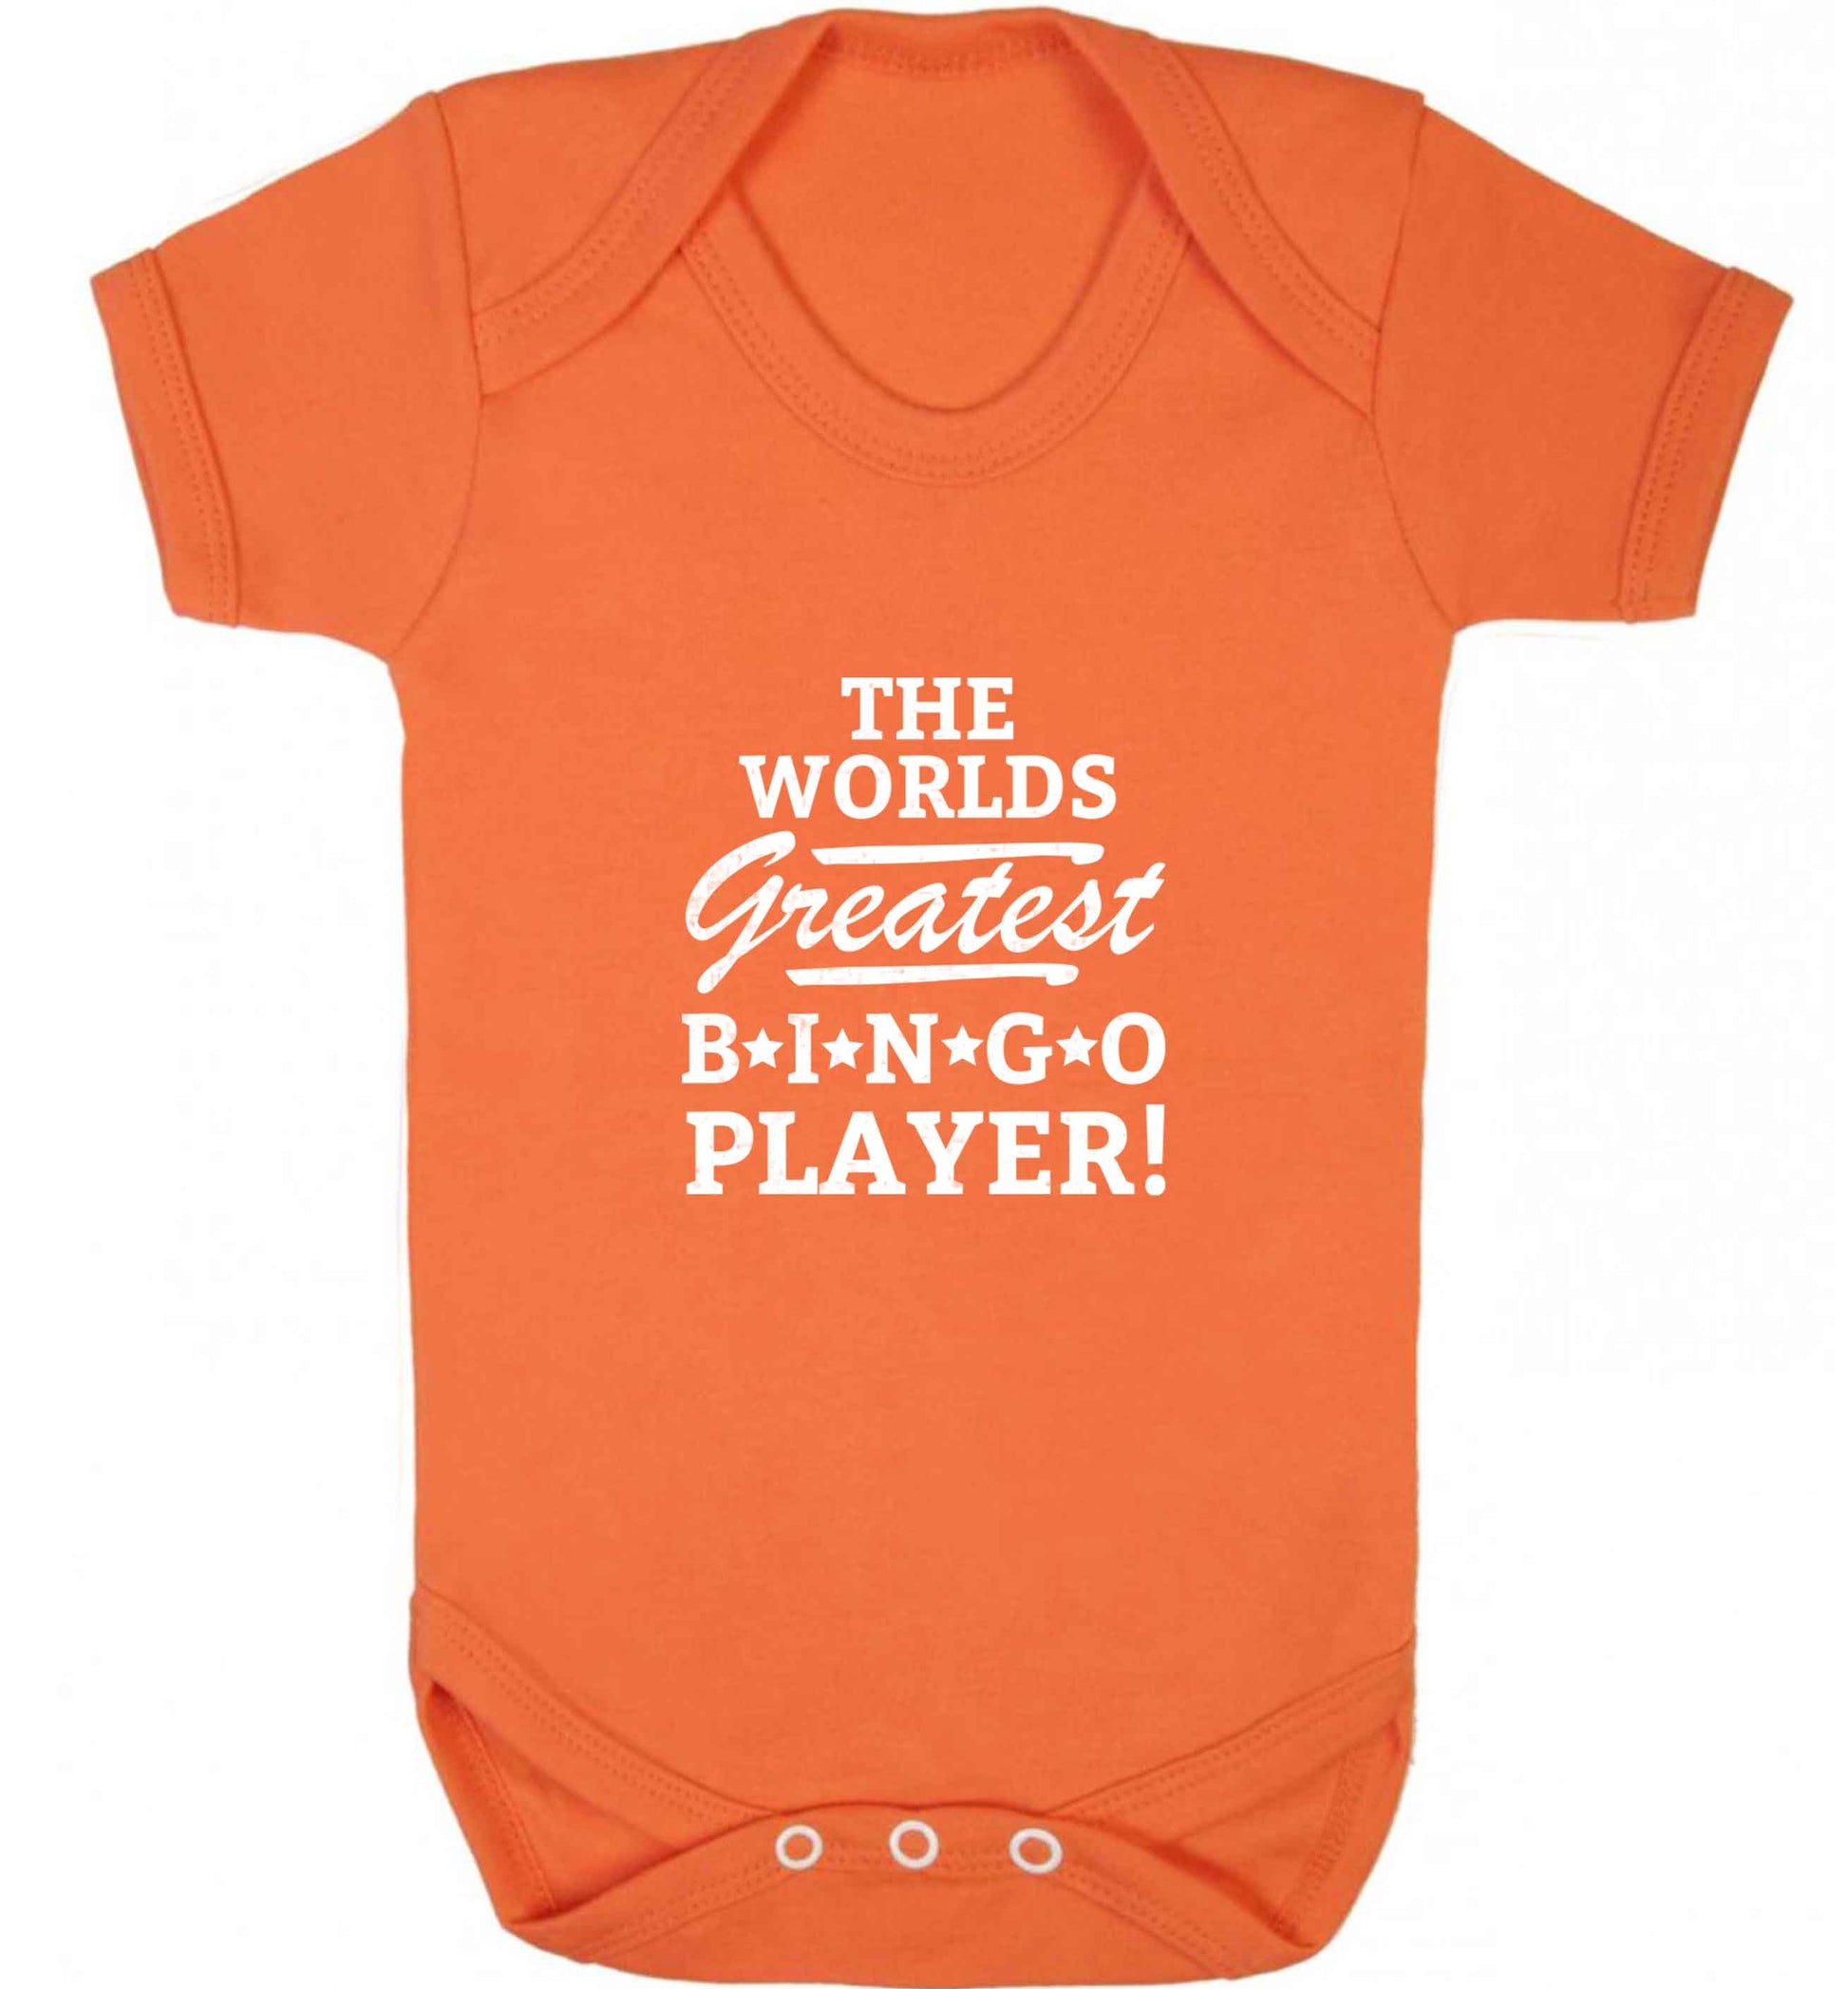 Worlds greatest bingo player baby vest orange 18-24 months